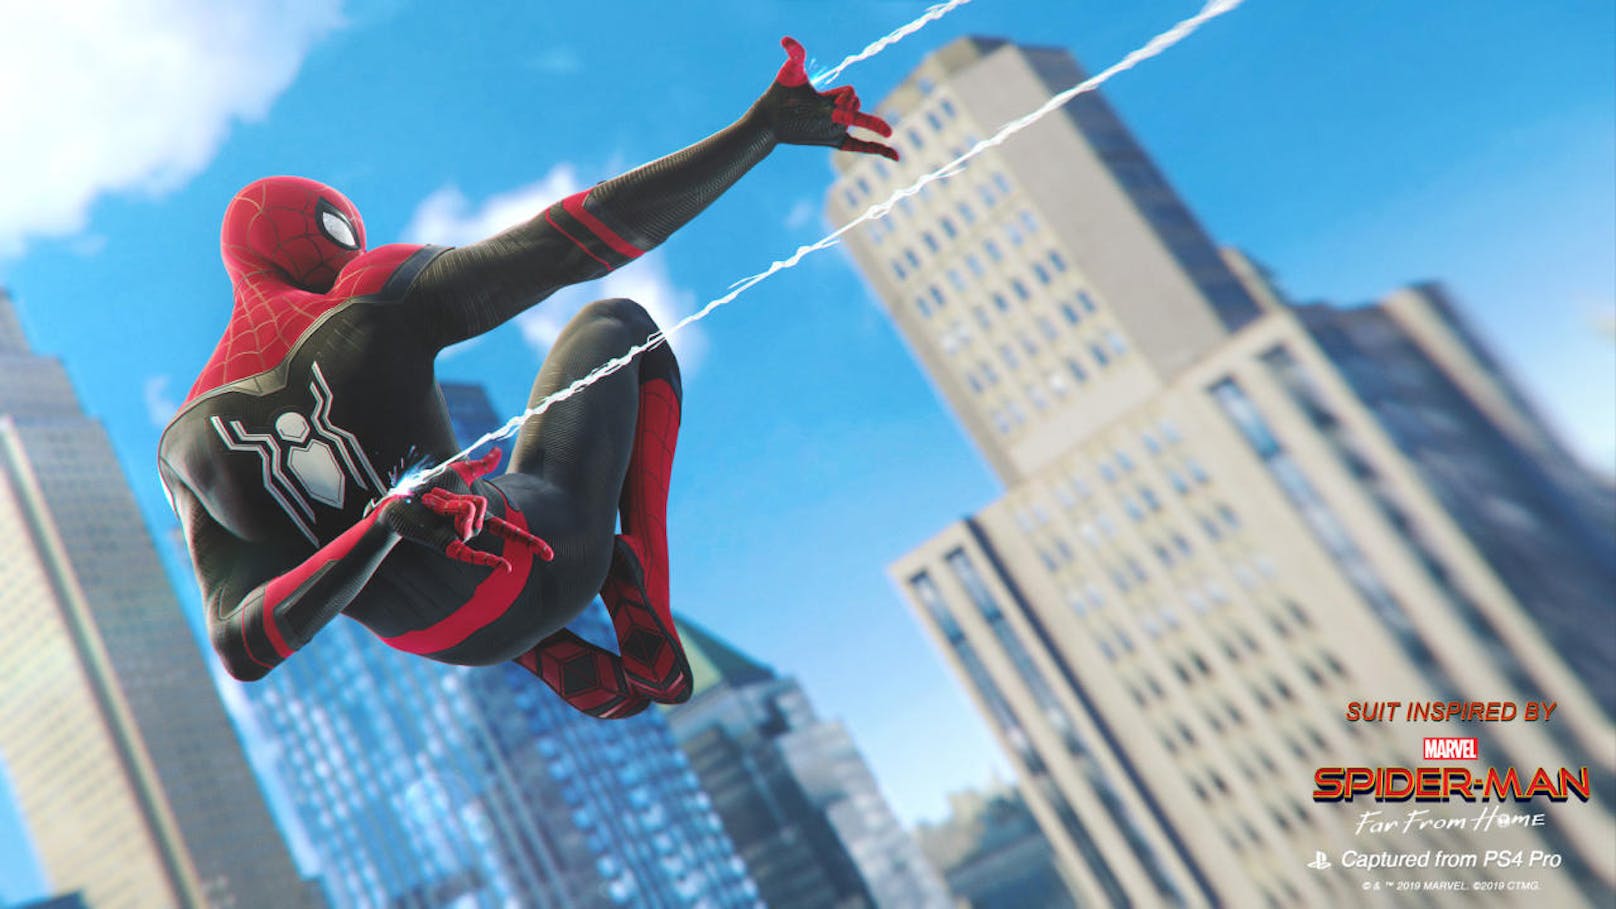 <b>04. Juli 2019:</b> Ein kostenloses Update für das PS4-Game "Marvels Spider-Man" bringt ab sofort zwei neue Anzüge aus dem Kinofilm "Spider-Man: Far From Home" in das Spiel. Mit dem Patch 1.16 erhalten Spieler, die den Verbesserten Anzug in Marvels Spider-Man freigeschaltet haben, im Spiel sofortigen Zugriff auf den Aufgerüsteten Anzug und den Tarnanzug aus Spider-Man: Far From Home. Besitzer von PlayStation VR dürfen sich zudem auf eine kostenlose VR-Erfahrung von Spider-Man: Far From Home freuen, die im PlayStation Store heruntergeladen werden kann. Hier werden Spieler selbst zu Spider-Man und erleben hautnah, wie es sich anfühlt, durch die Straßen New York Citys zu schwingen.